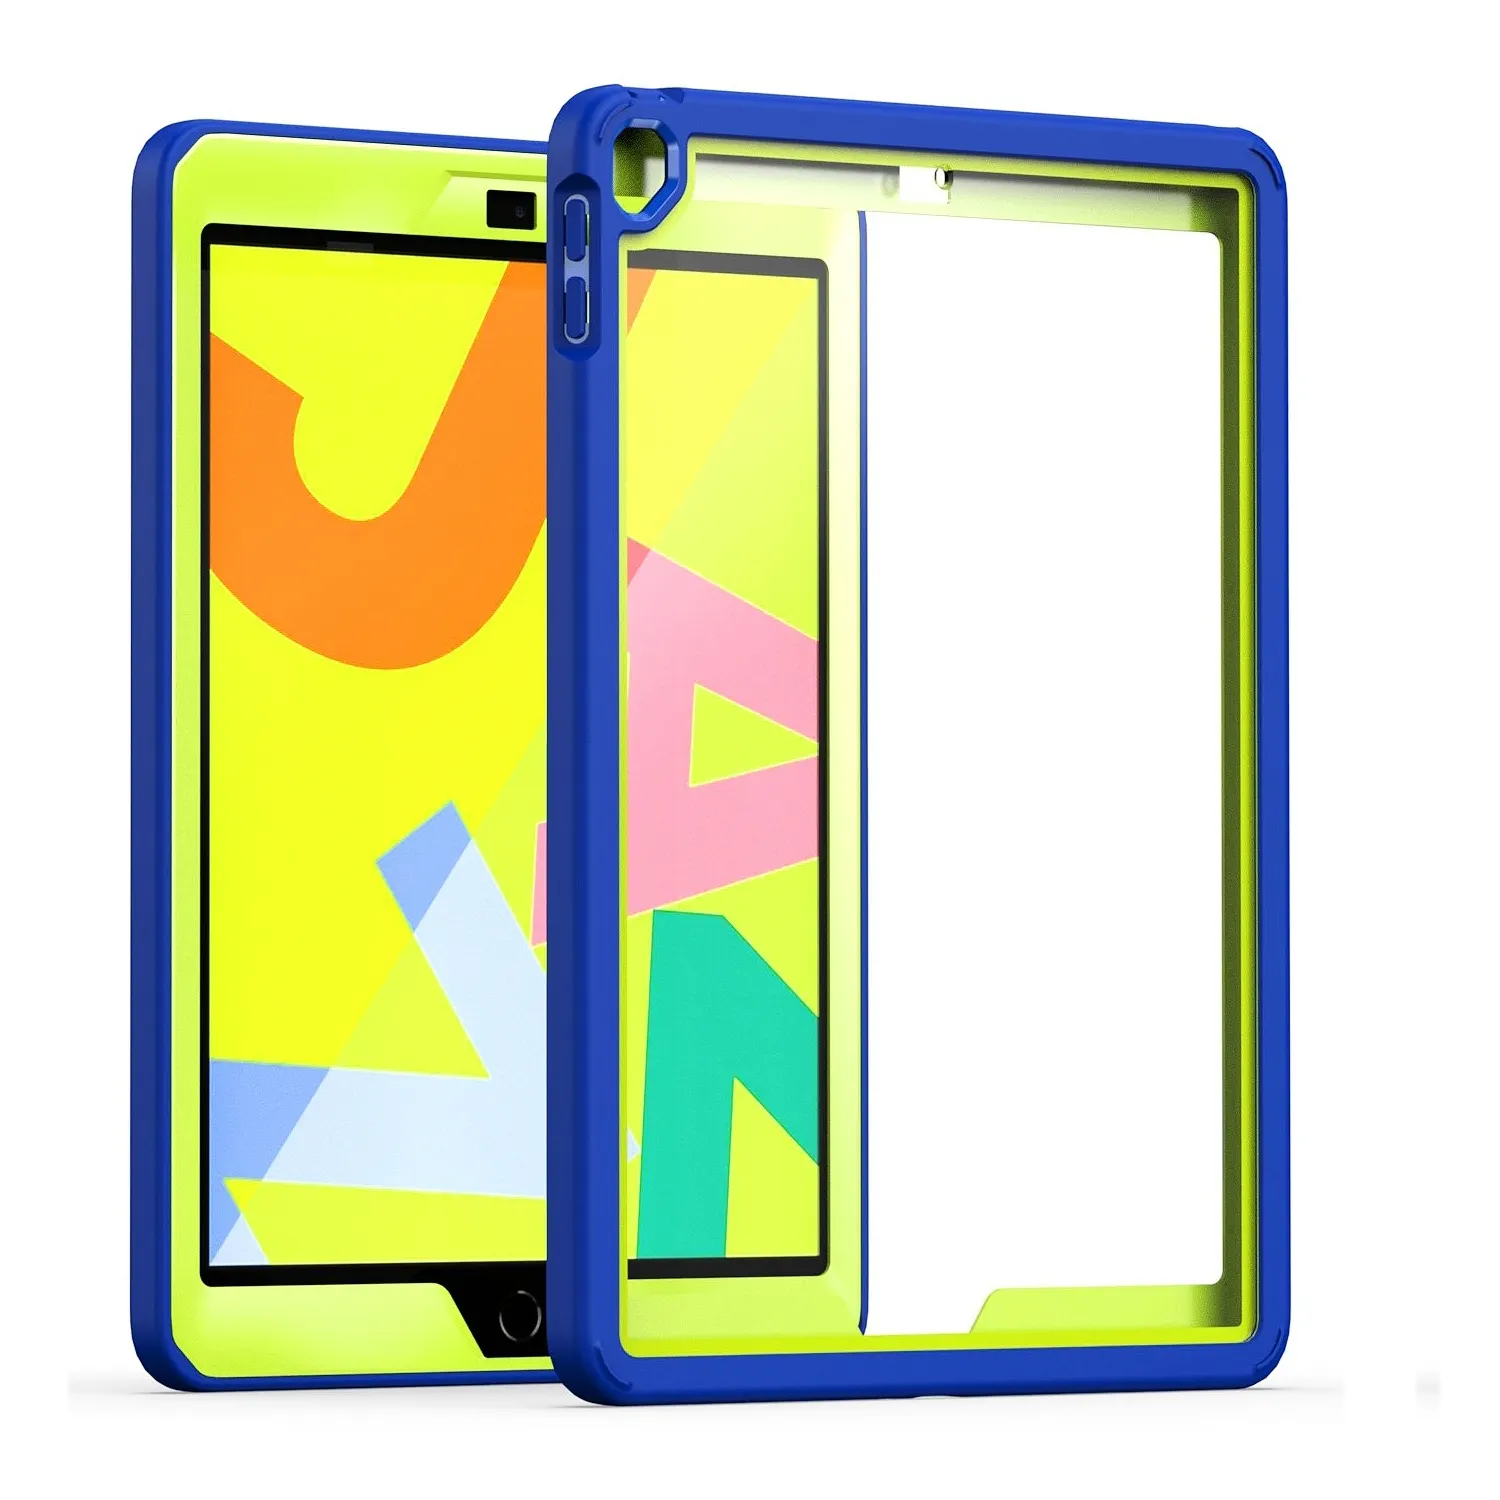 Support magnétique pour tablette, étui transparent en acrylique pour iPad Air 4/5 10.9 pouces